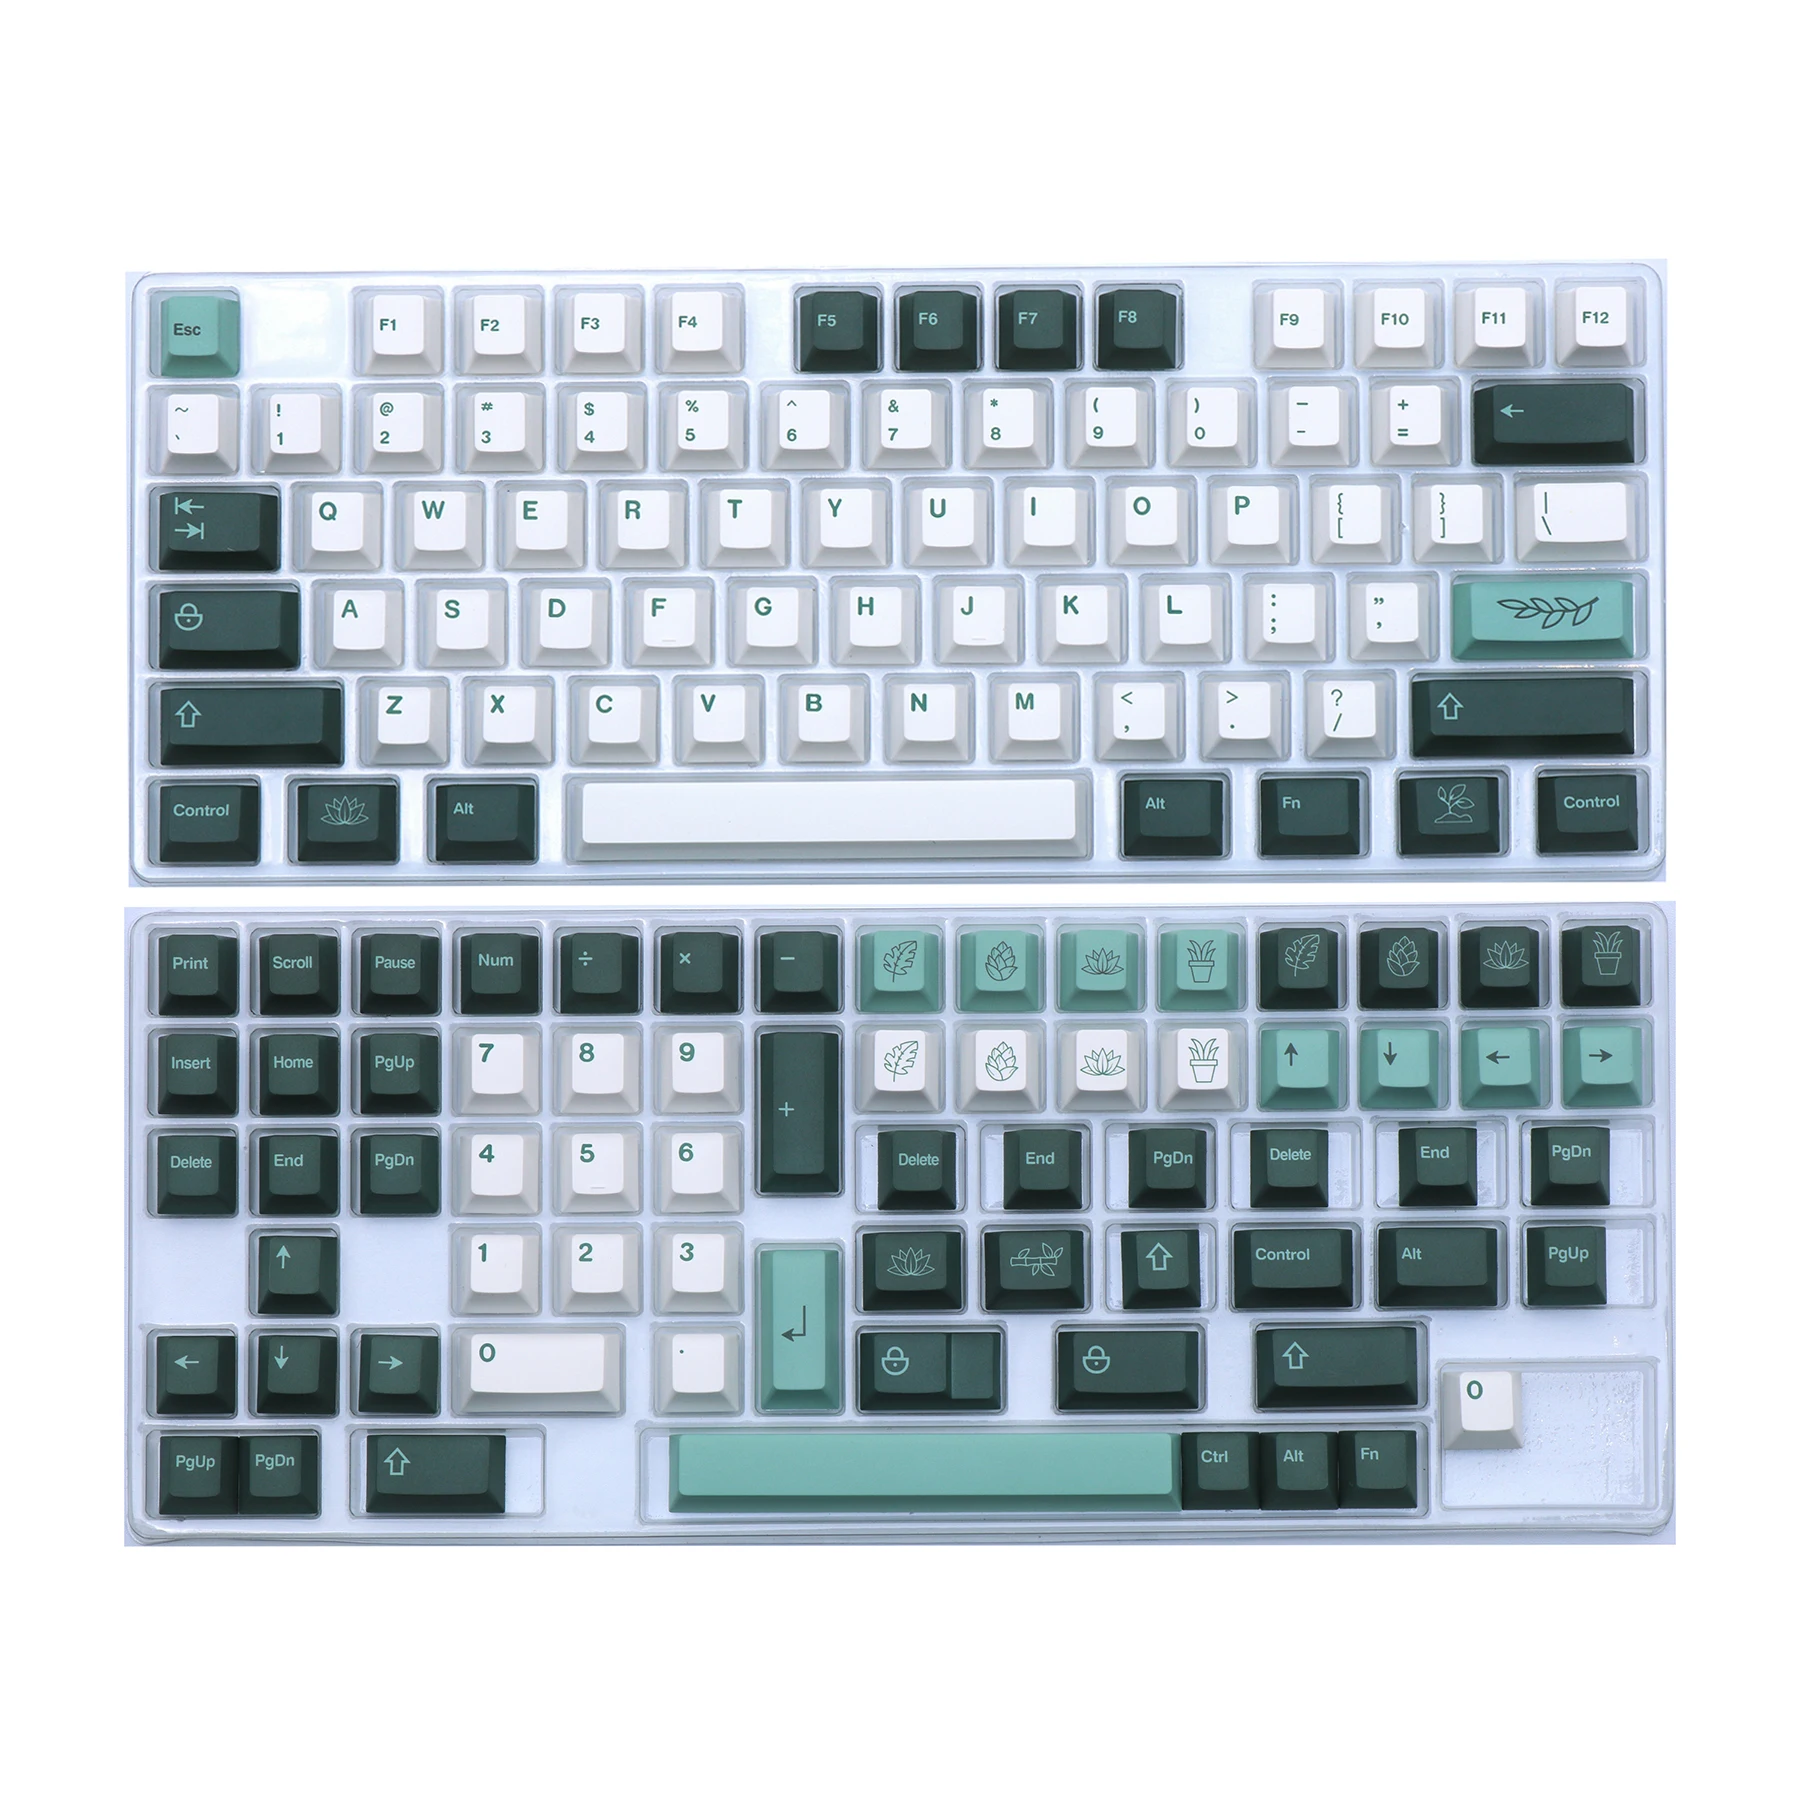 

Колпачок для механической клавиатуры, 1 комплект, колпачки для ботанических клавиш PBT Dye Subbed GMK, колпачки для ботанических клавиш Cherry Profile с ISO ...